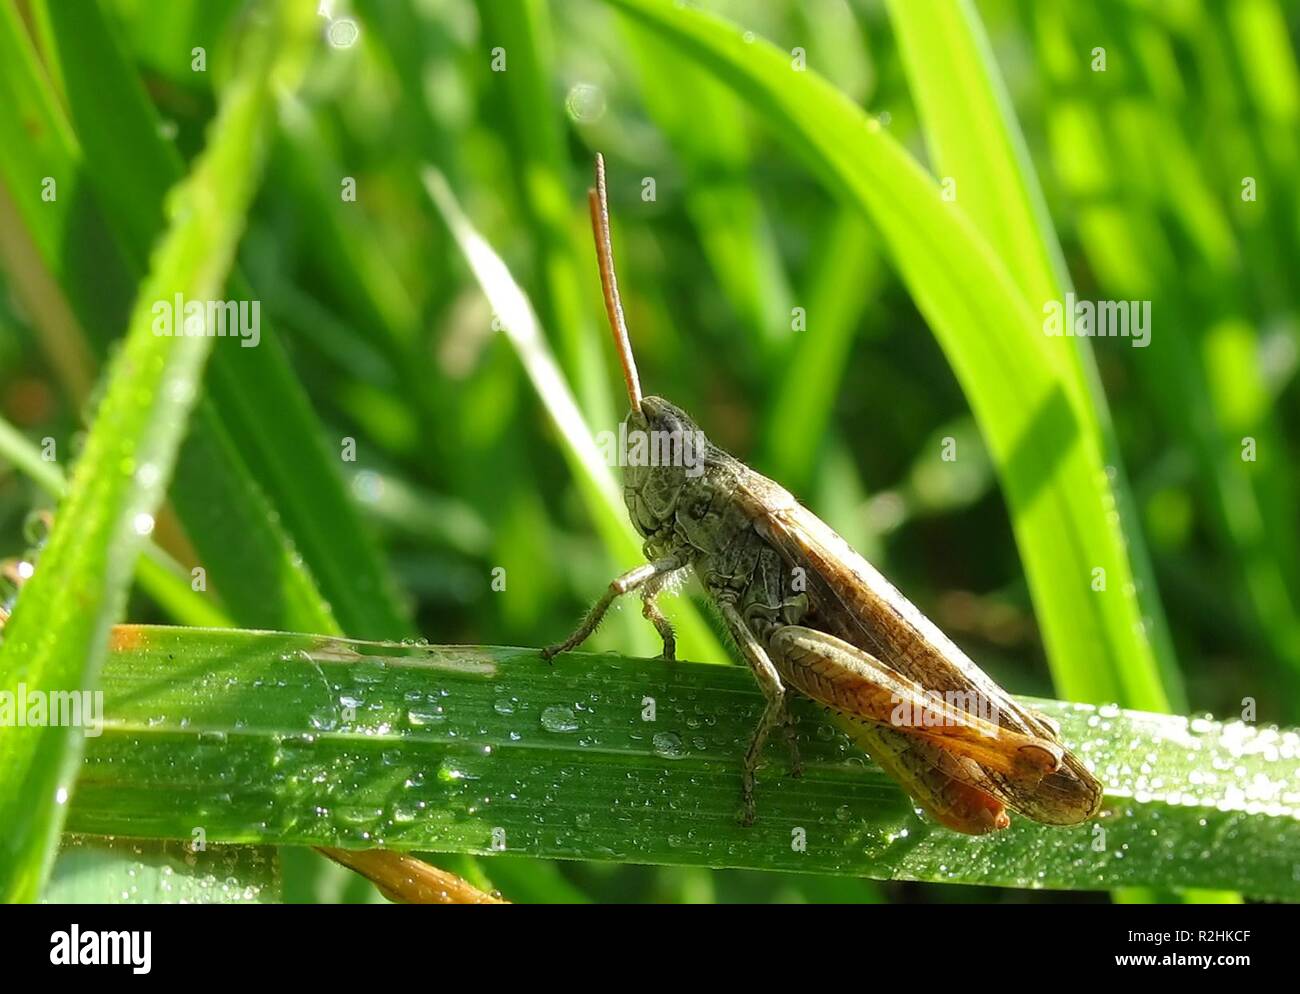 field grasshopper Stock Photo